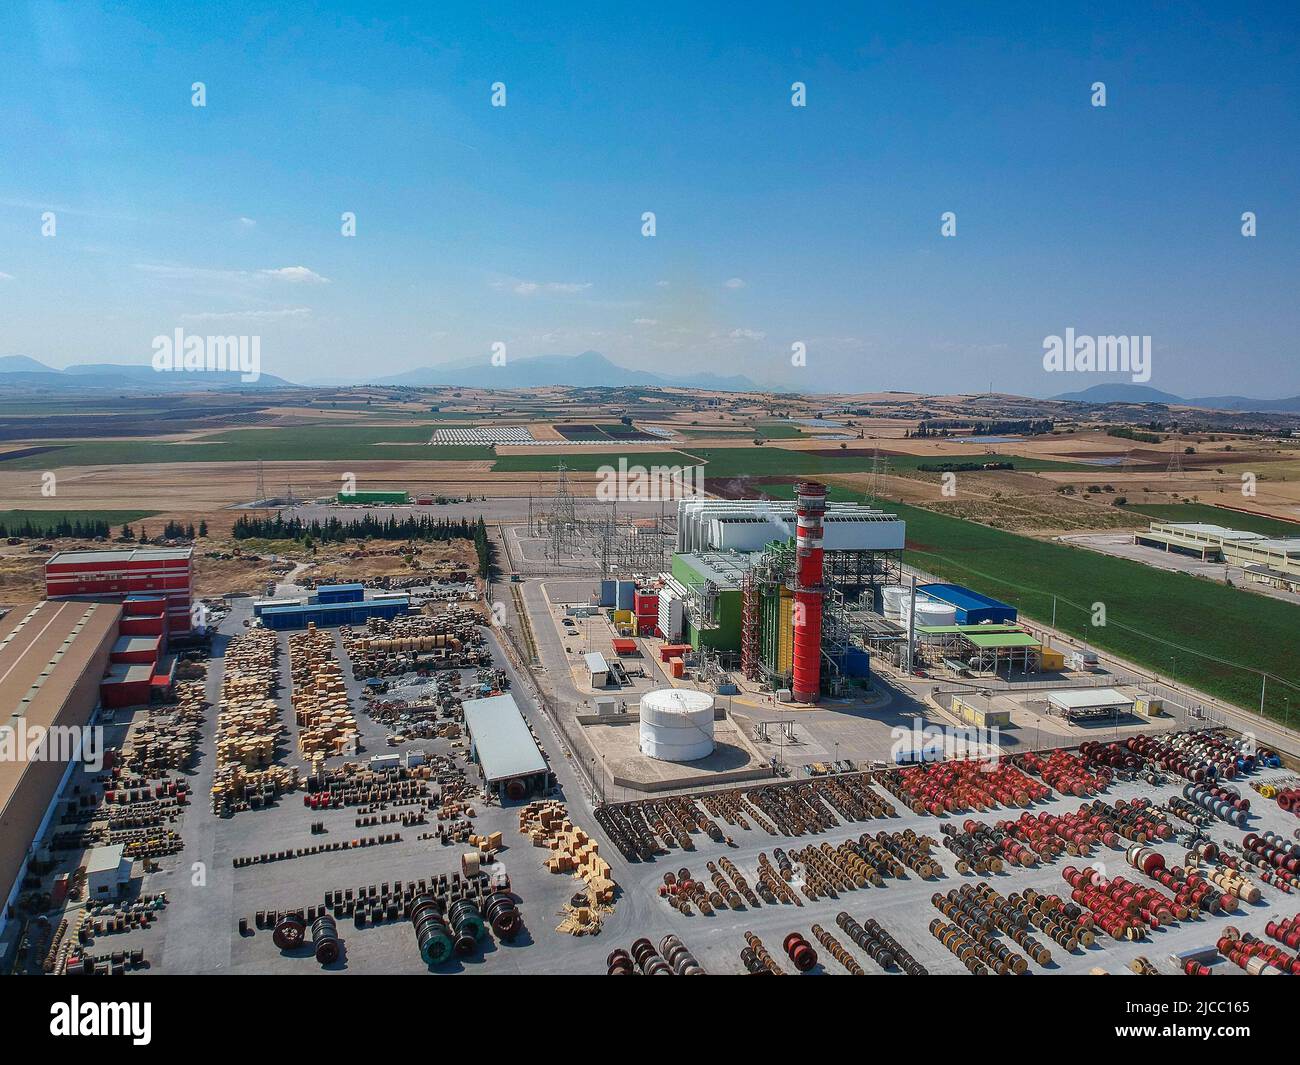 Artial view of CCGT Power Plant Thermoelectric Plant near city of Thiva, in the region of Viotia, Greece. La centrale termica è una centrale elettrica in Foto Stock